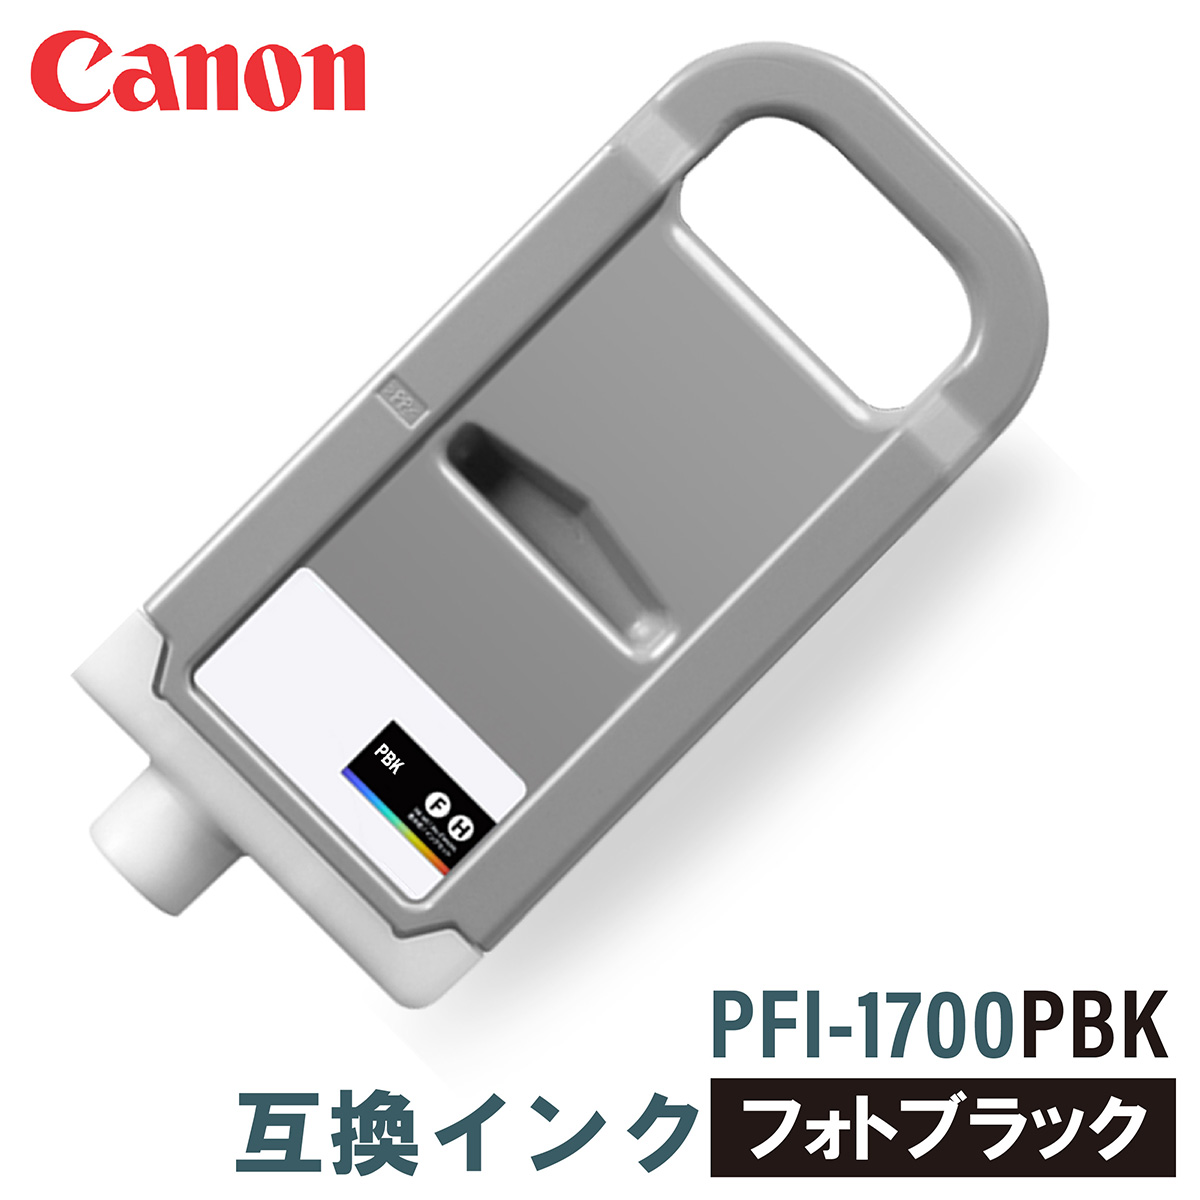 キヤノン 互換インク CANON PFI-1700PBK フォトブラック 700ml インクカートリッジ